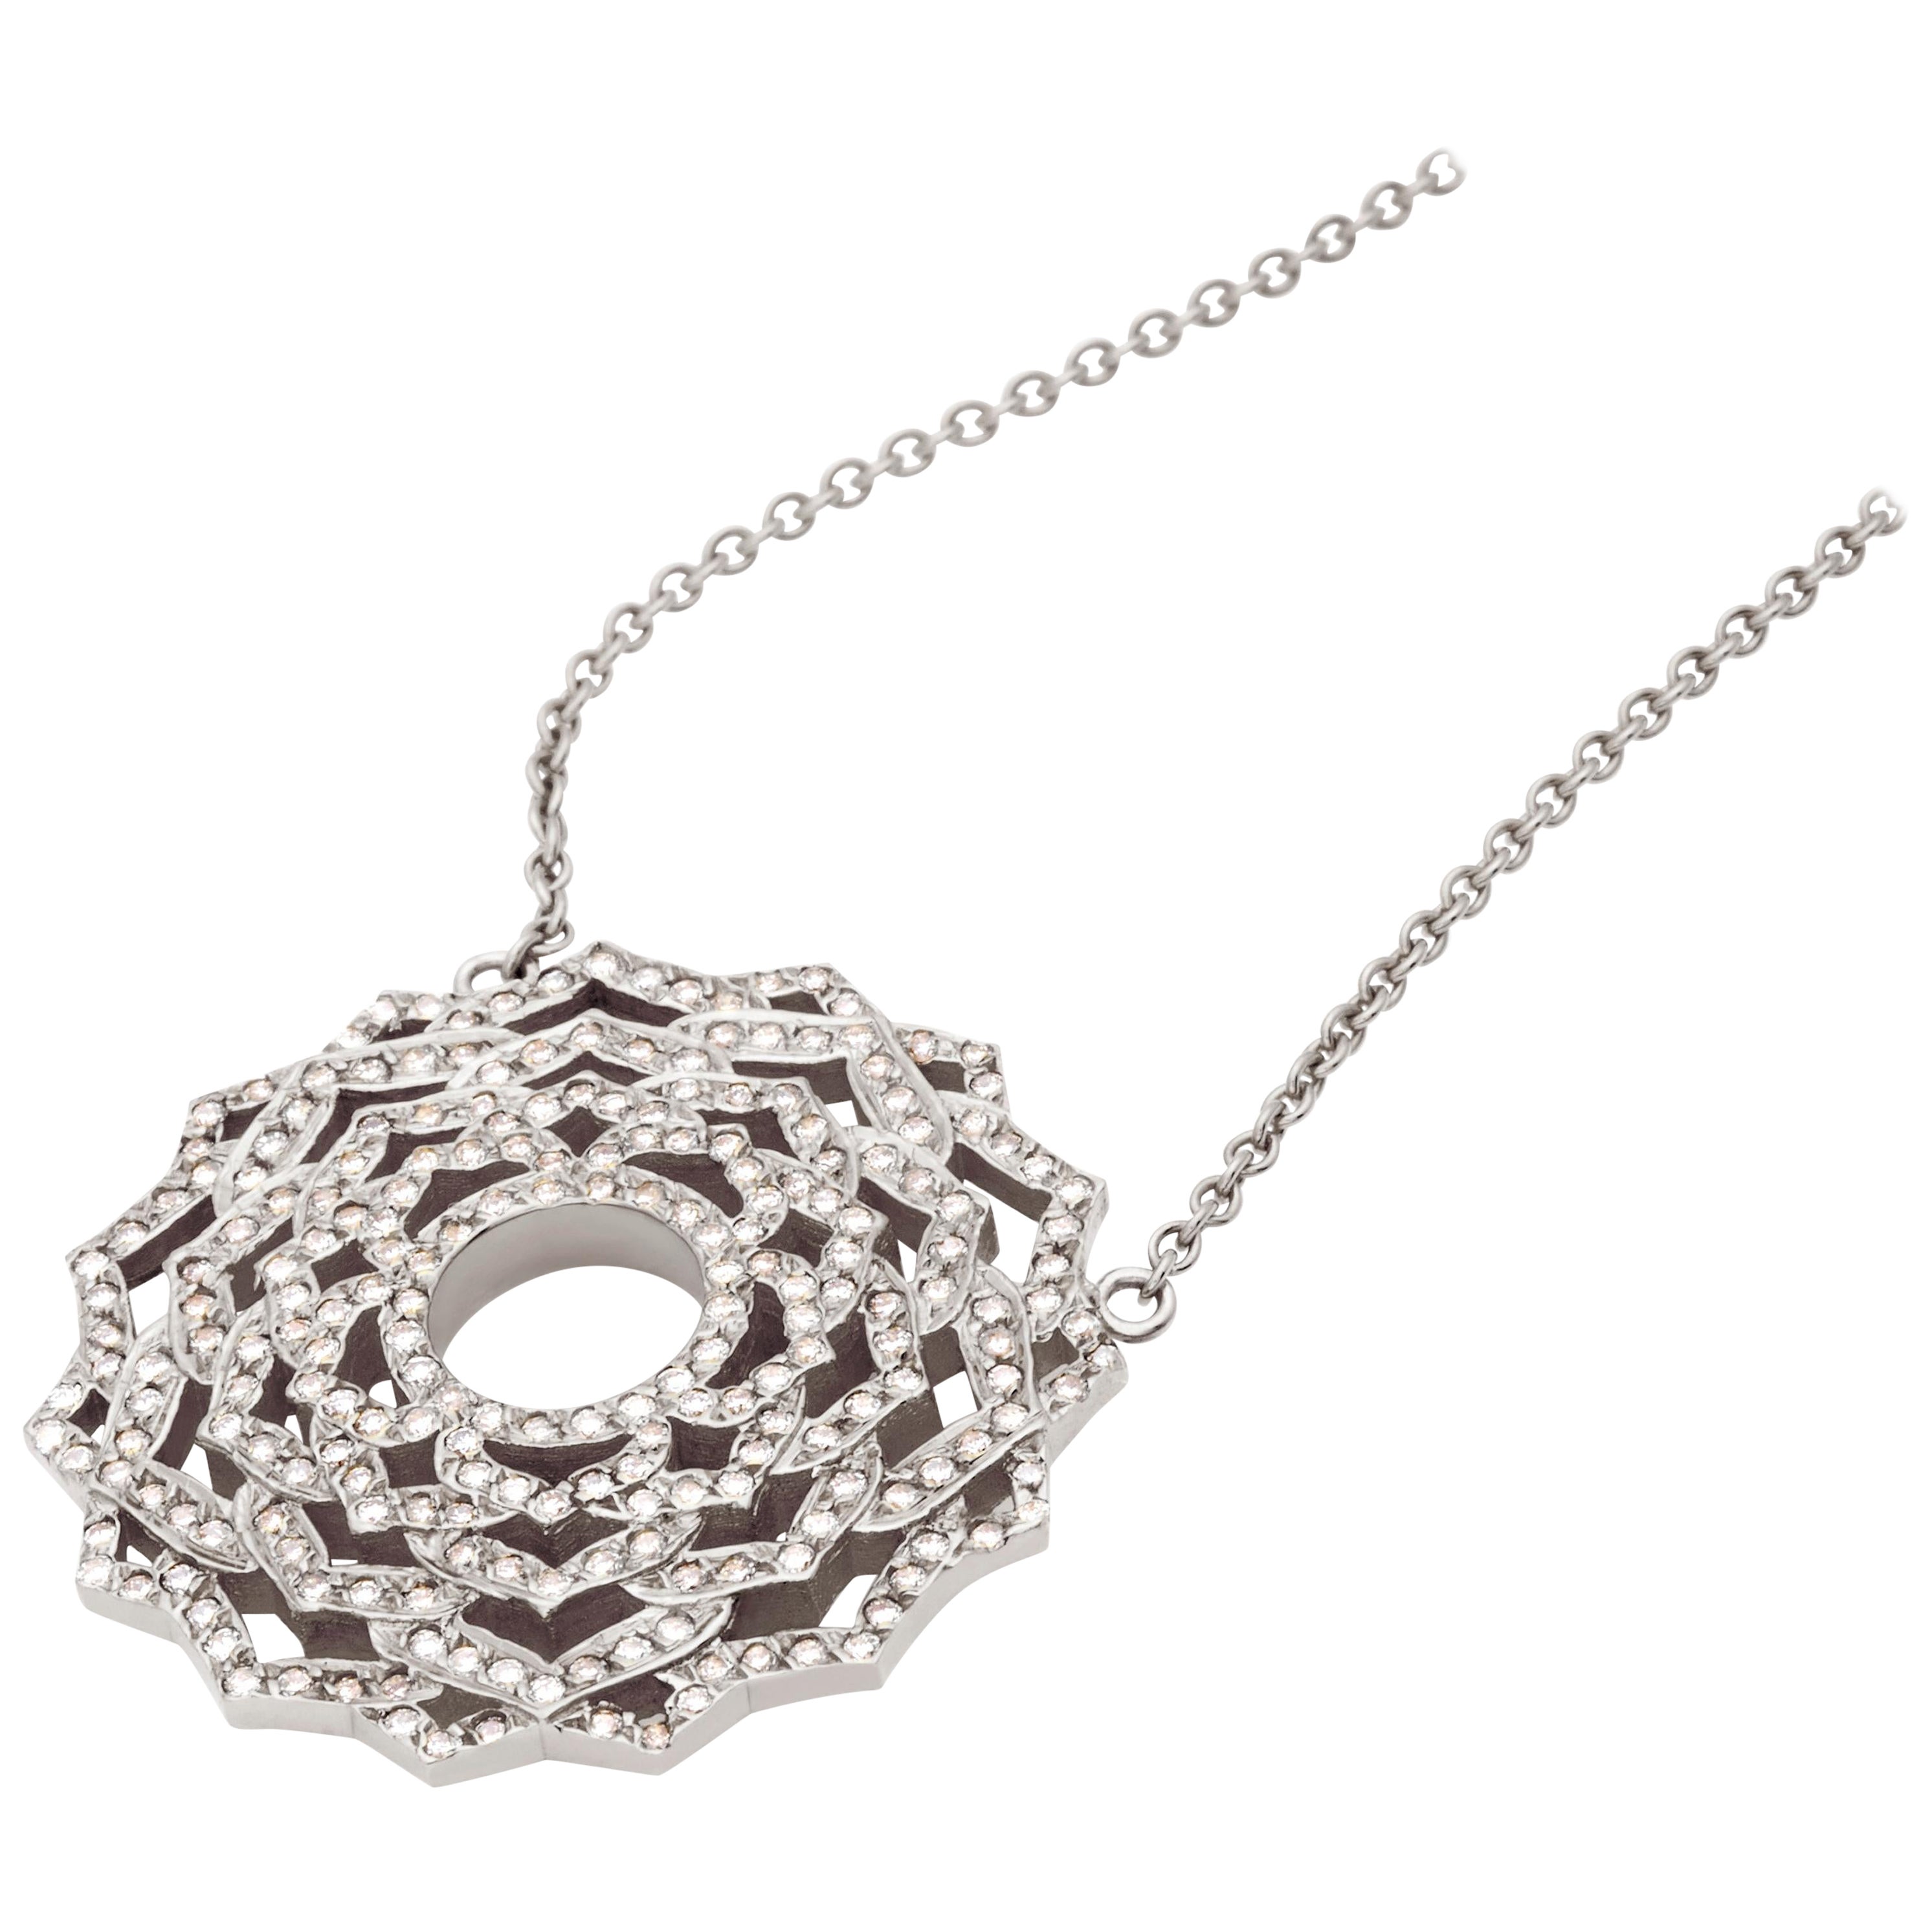 Nicofilimon the Jewelry Designer   Drop Necklaces